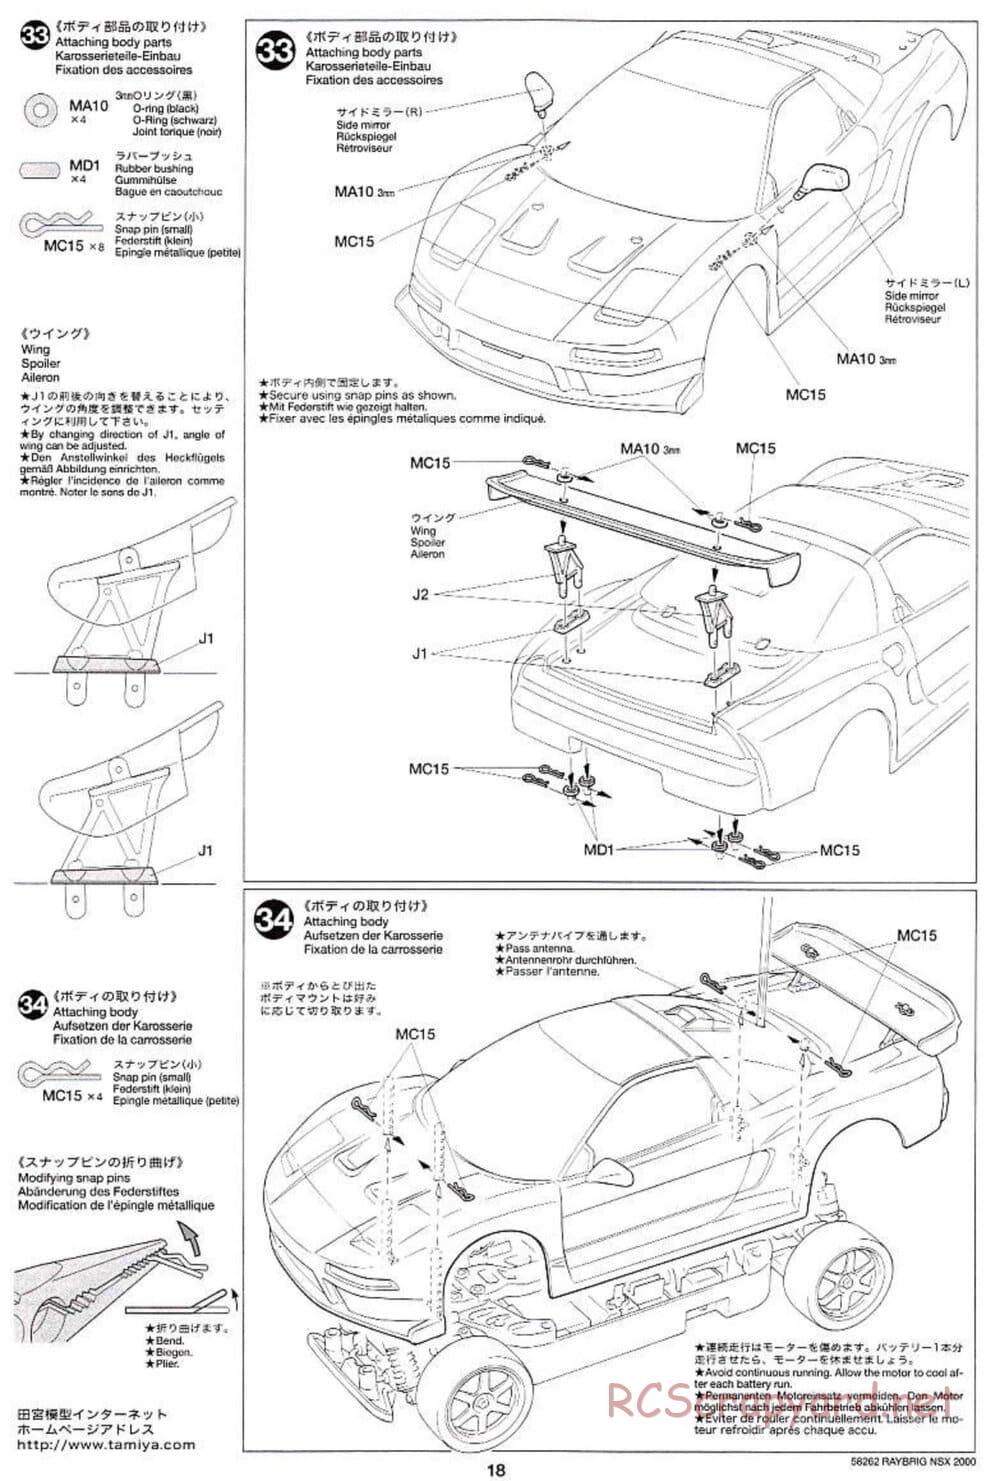 Tamiya - Raybrig NSX 2000 - TB-01 Chassis - Manual - Page 18